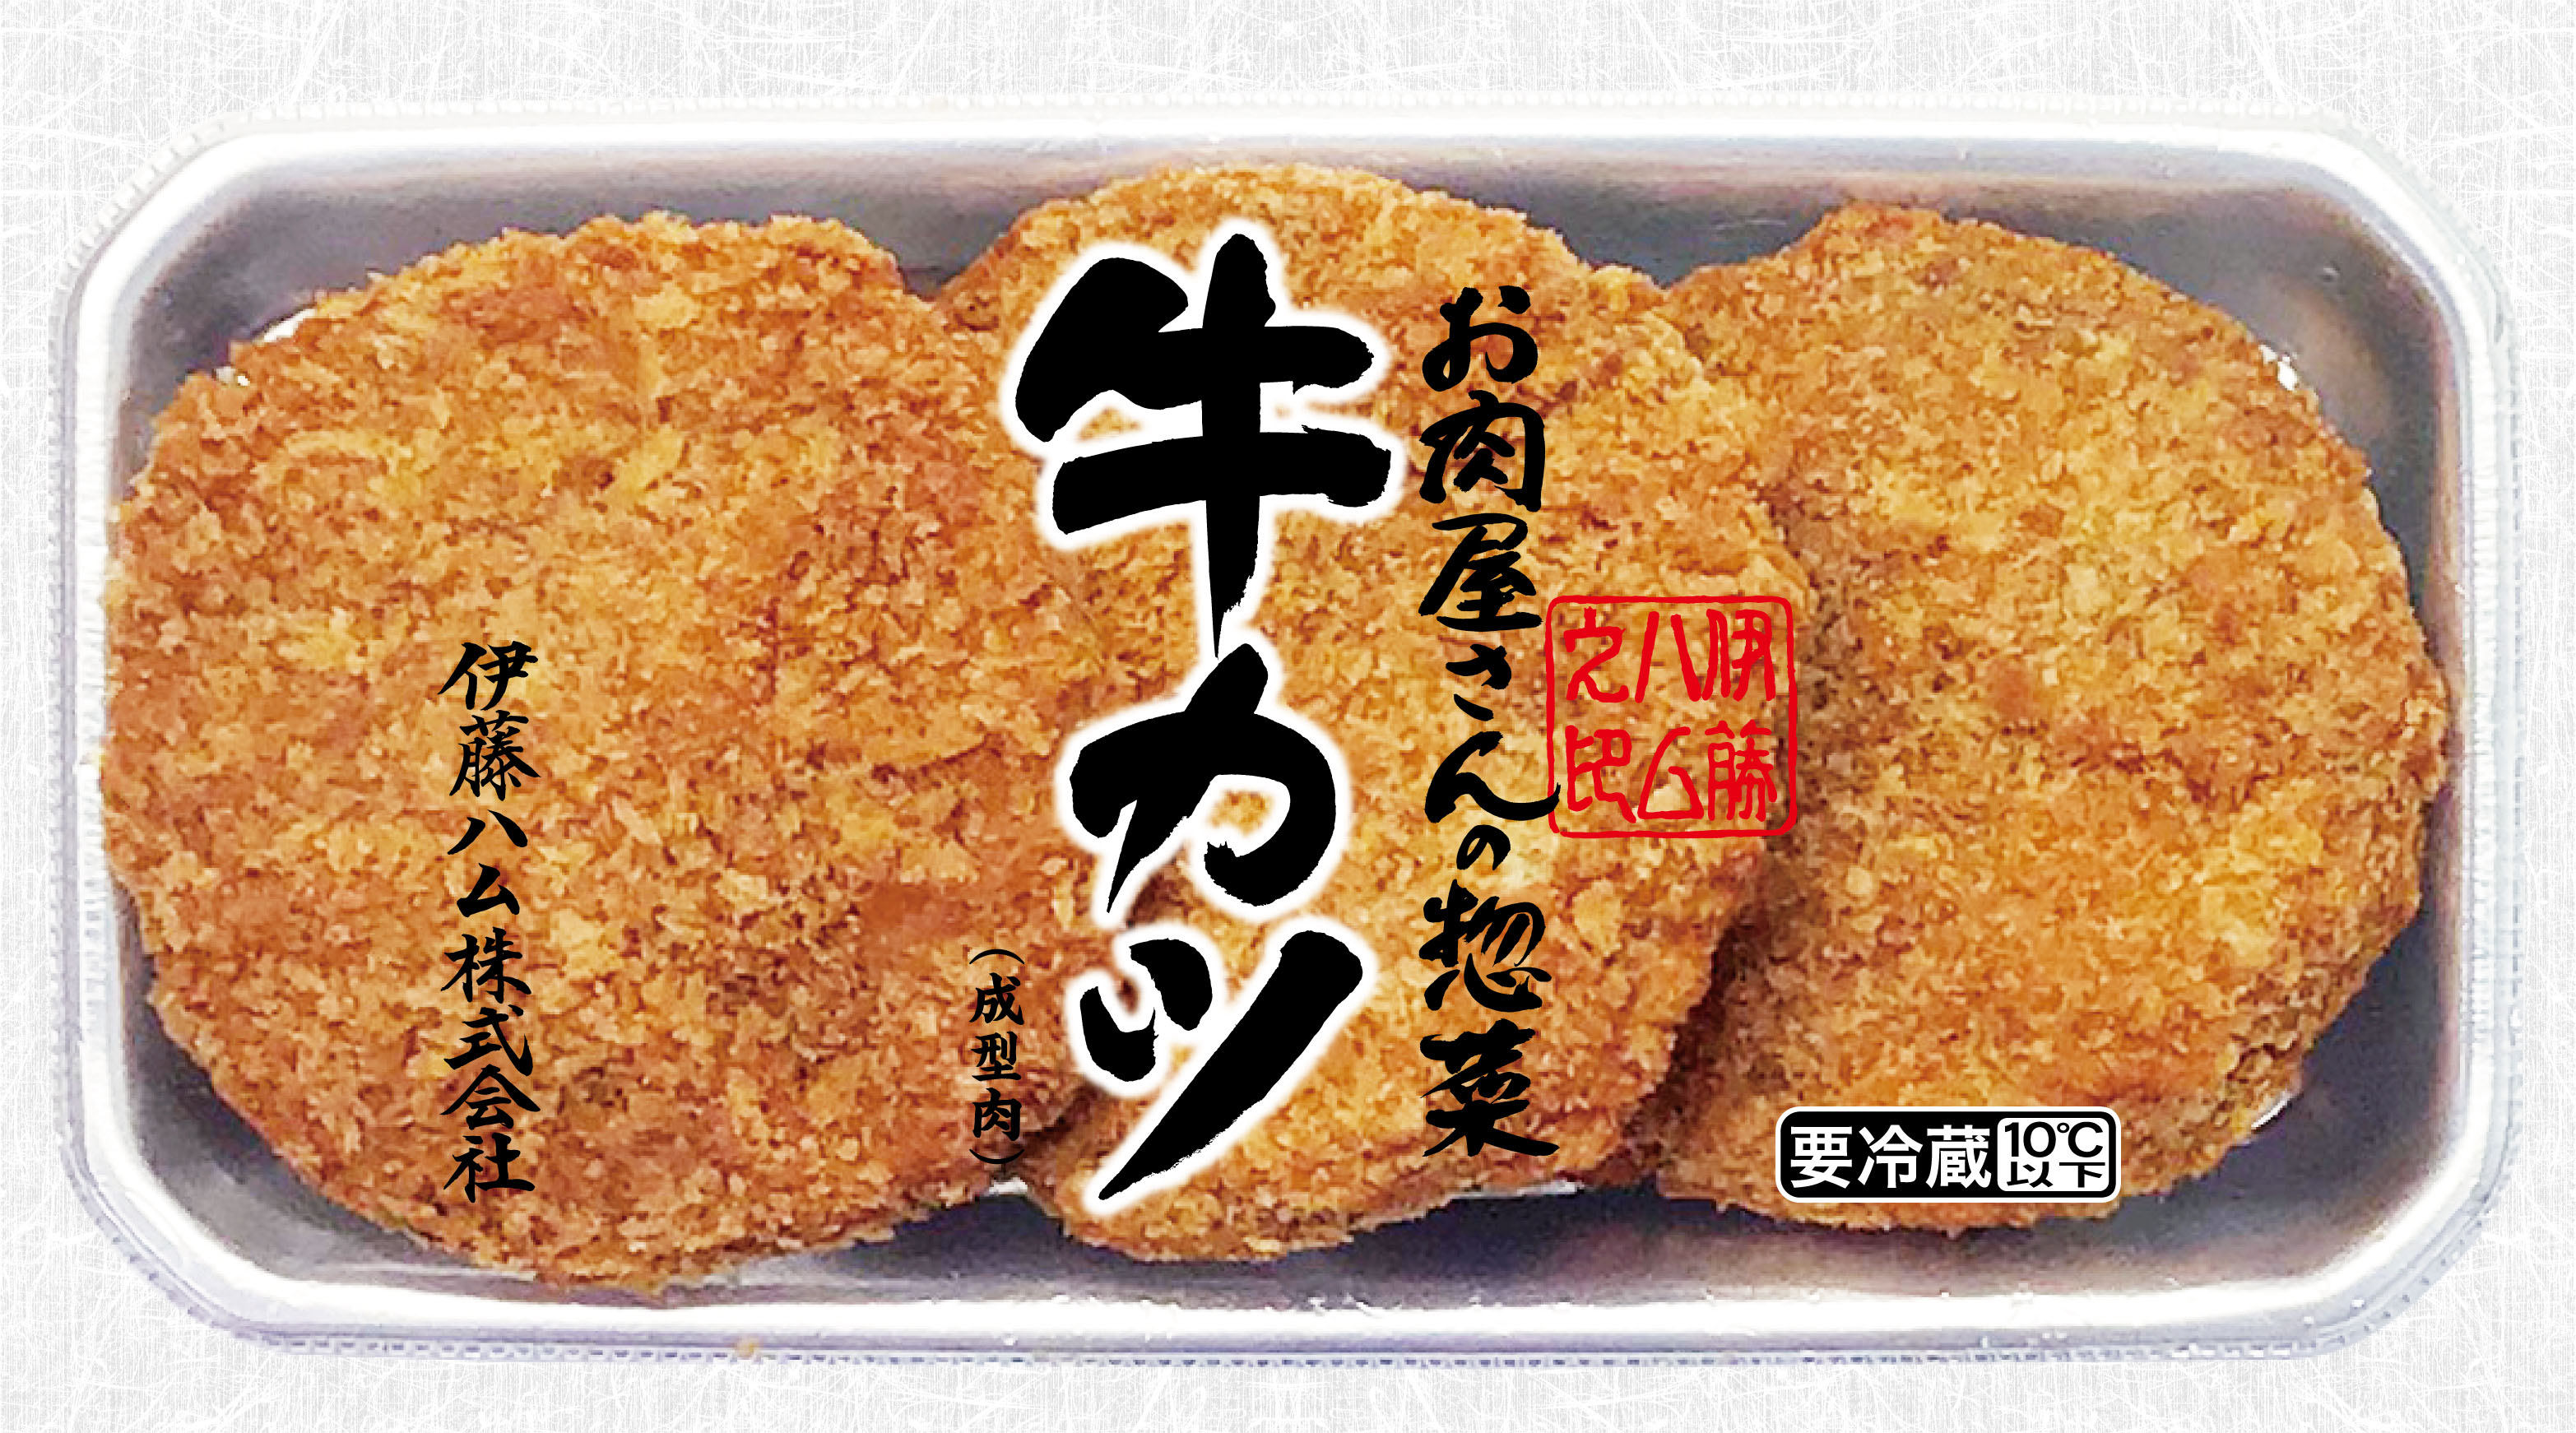 お肉屋さんの惣菜 牛カツ 懐かしの味 四角いハムカツ 新発売 伊藤ハム米久hdのプレスリリース